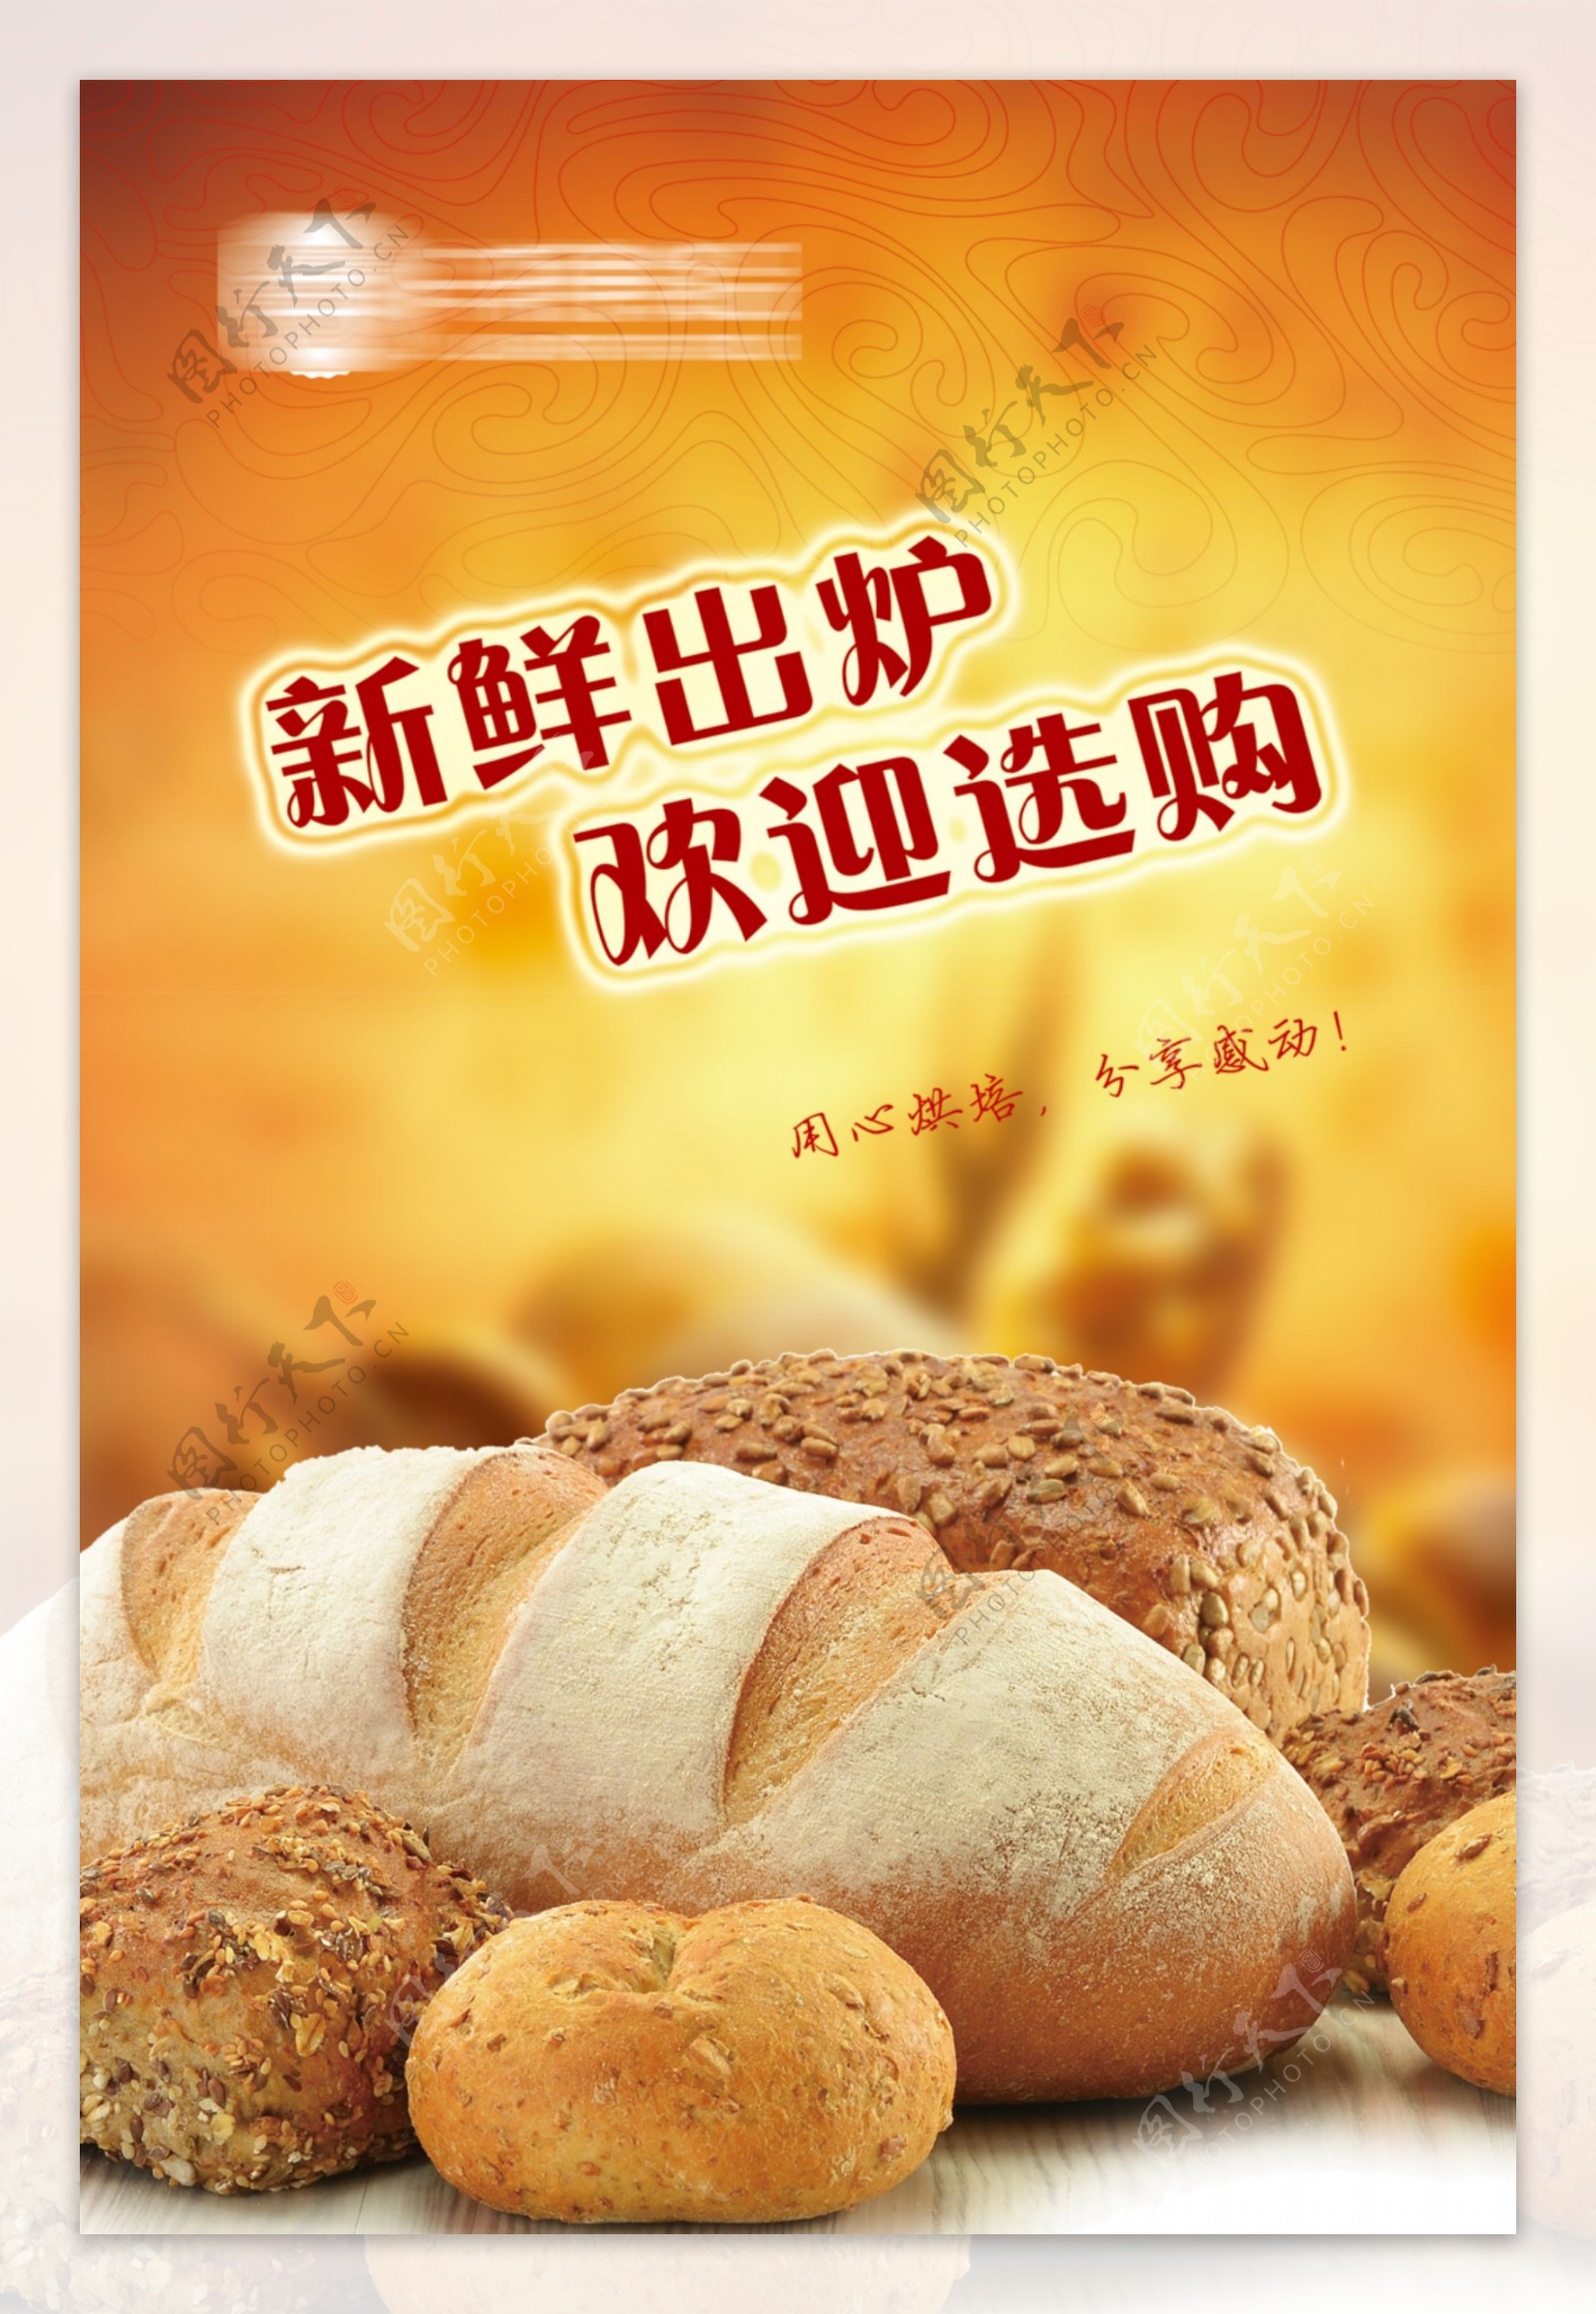 面包烘焙广告宣传海报